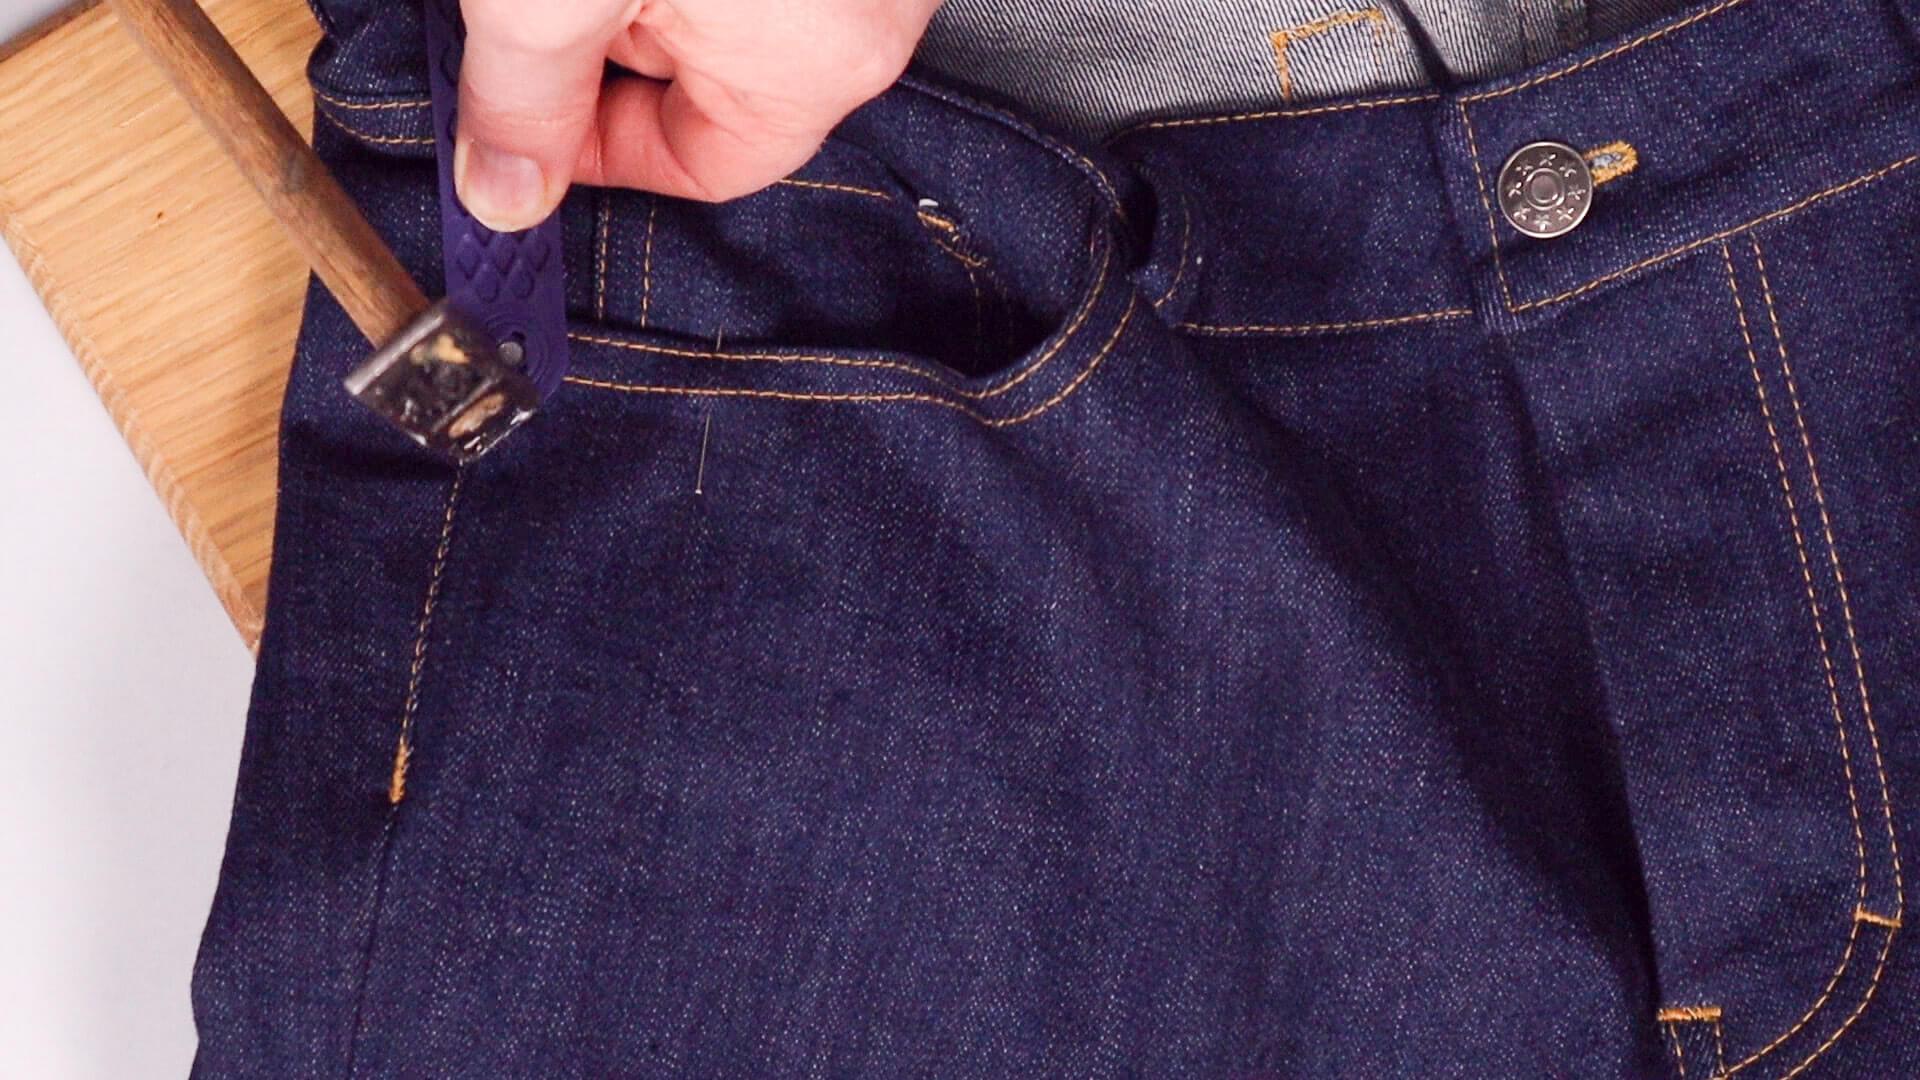 smartPATTERN Nähanleitung zum Anbringen von Nieten an Jeanshose - Niete mit Hammer festschlagen